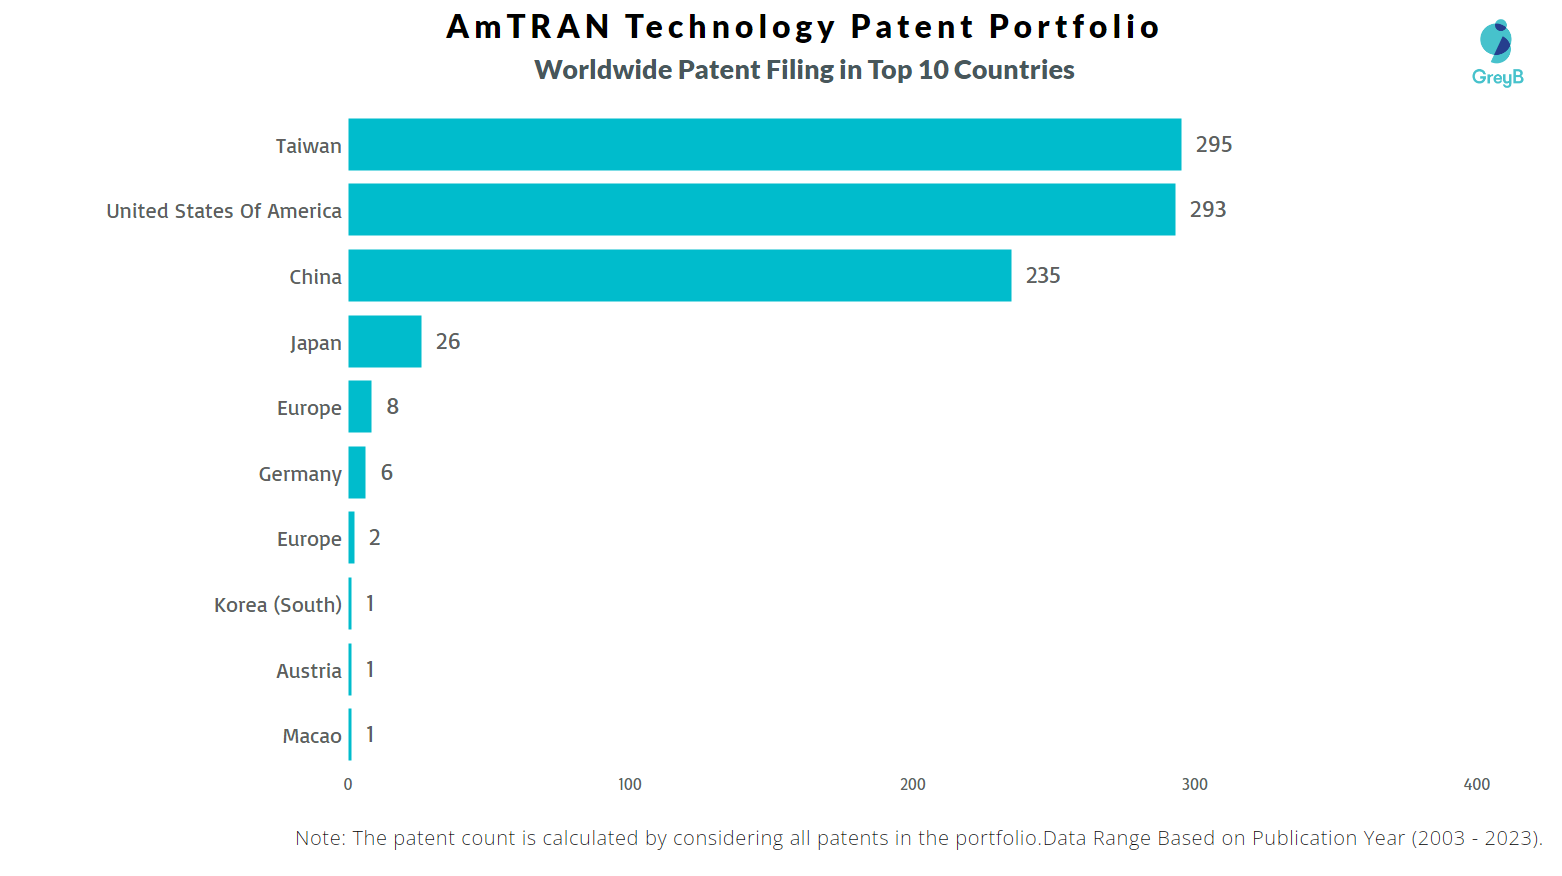 AmTRAN Technology Worldwide Patent Filing